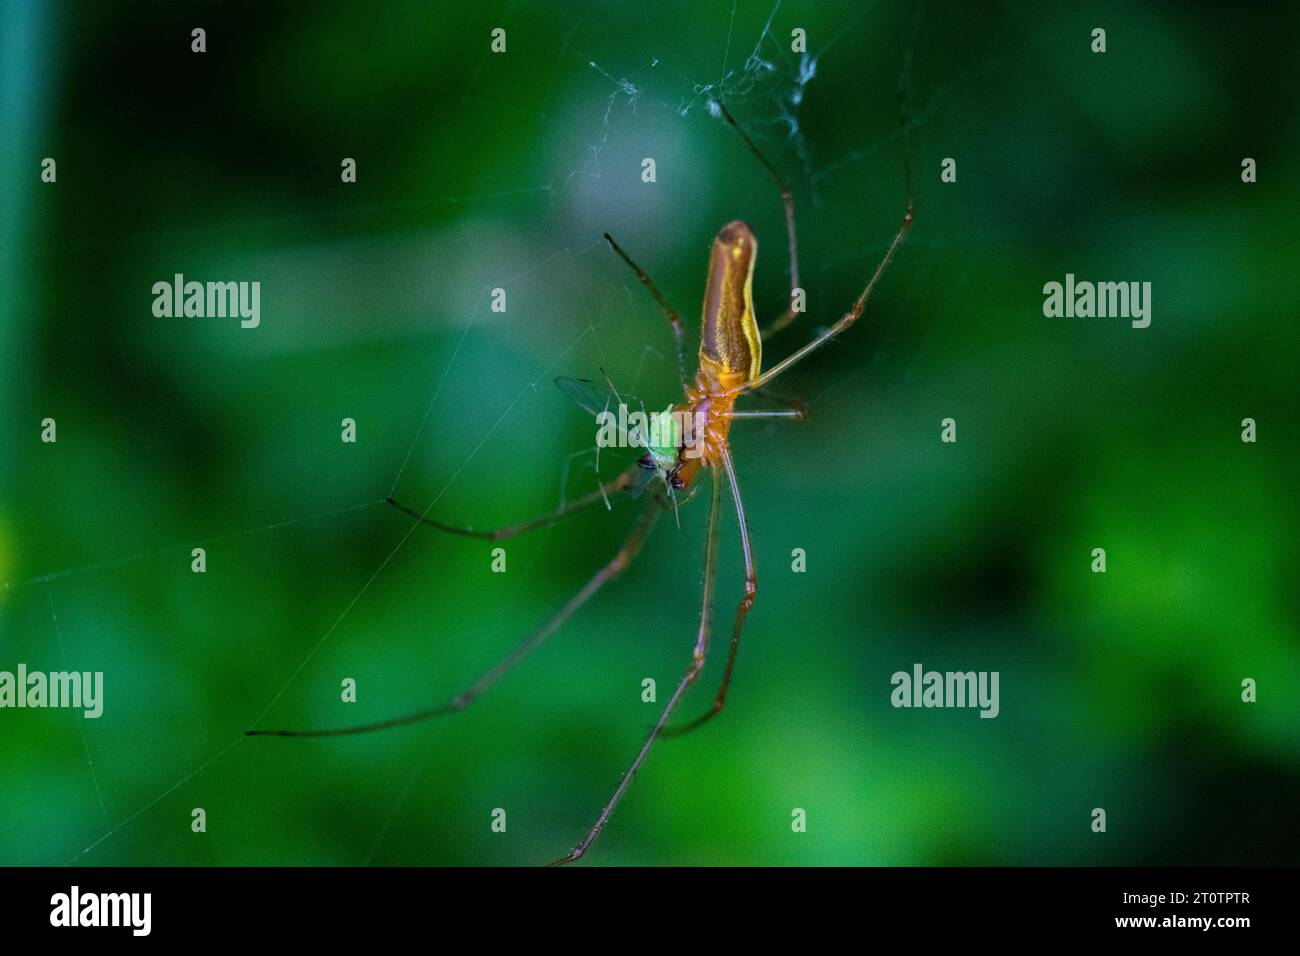 araignée mangeant un minuscule insecte vert Banque D'Images